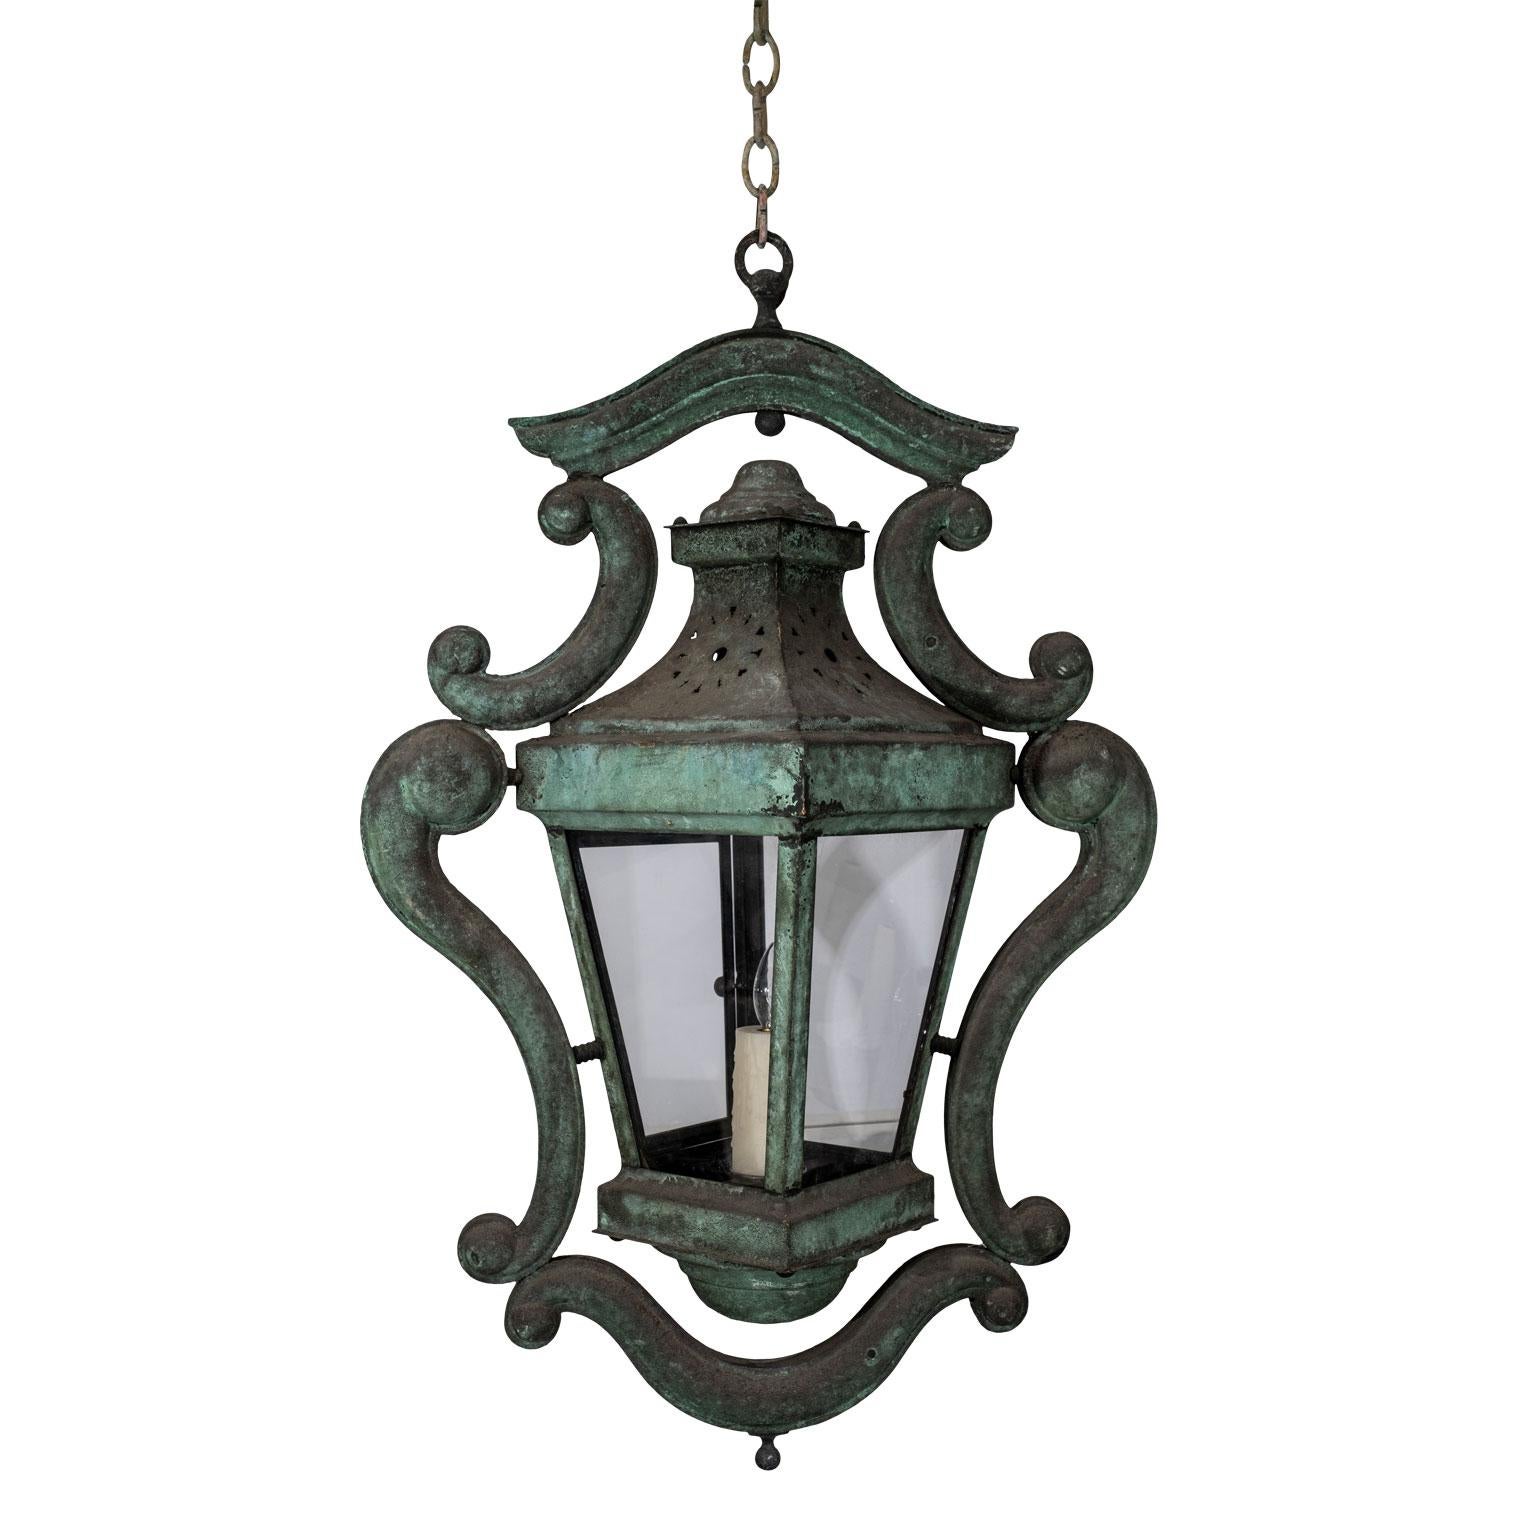 Decorative Italian Verdigris Copper Lantern 3